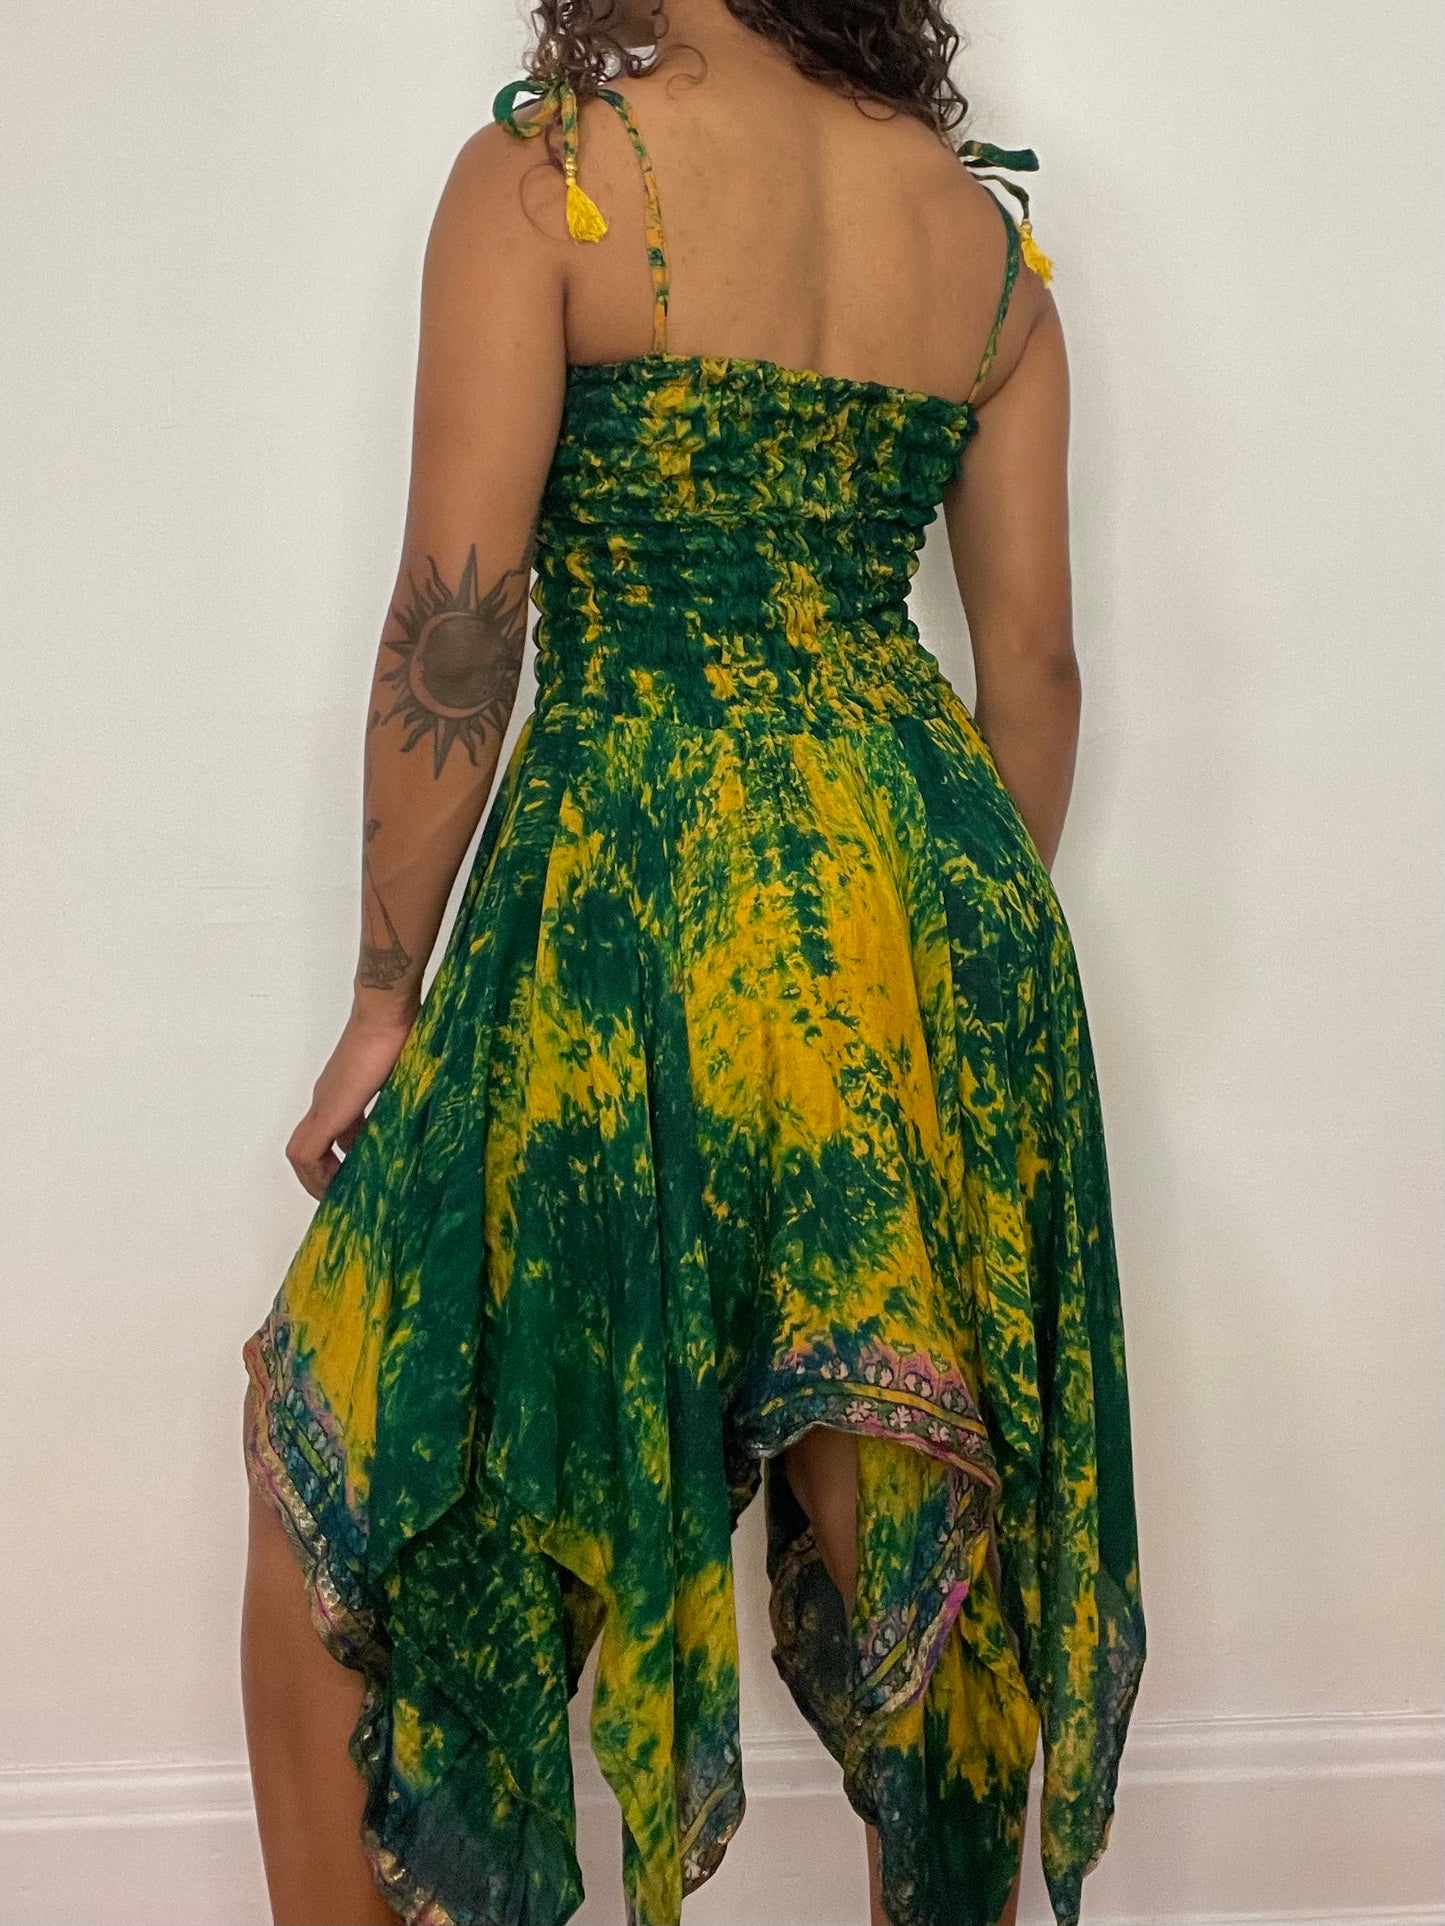 Green/Yellow Tie Dye Pixie Dress